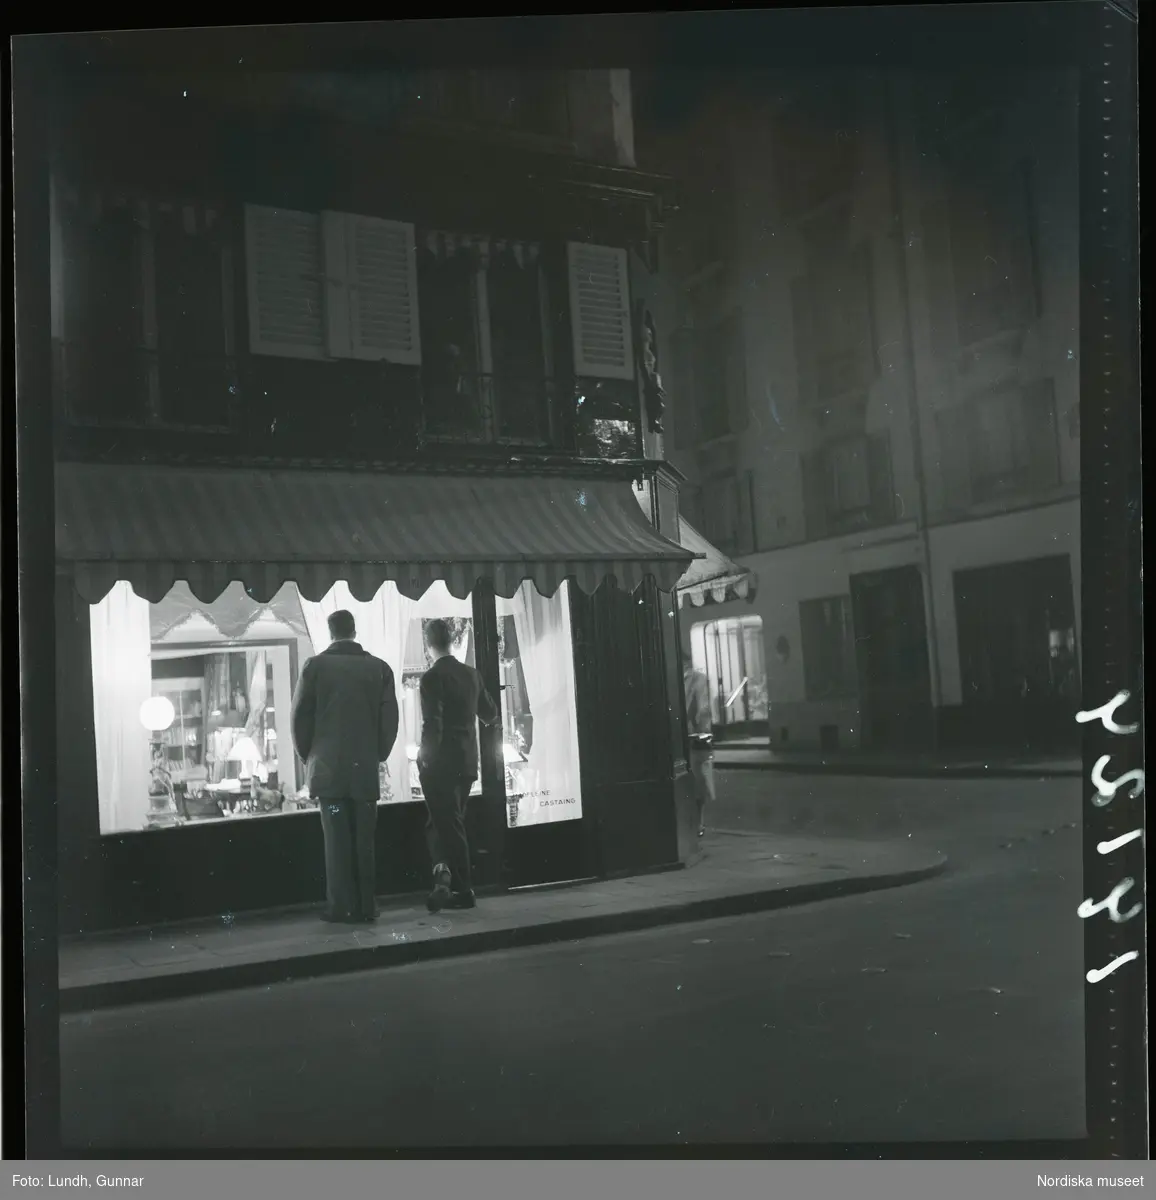 1950. Frankrike. Kvällsbild, två män framför skyltfönster